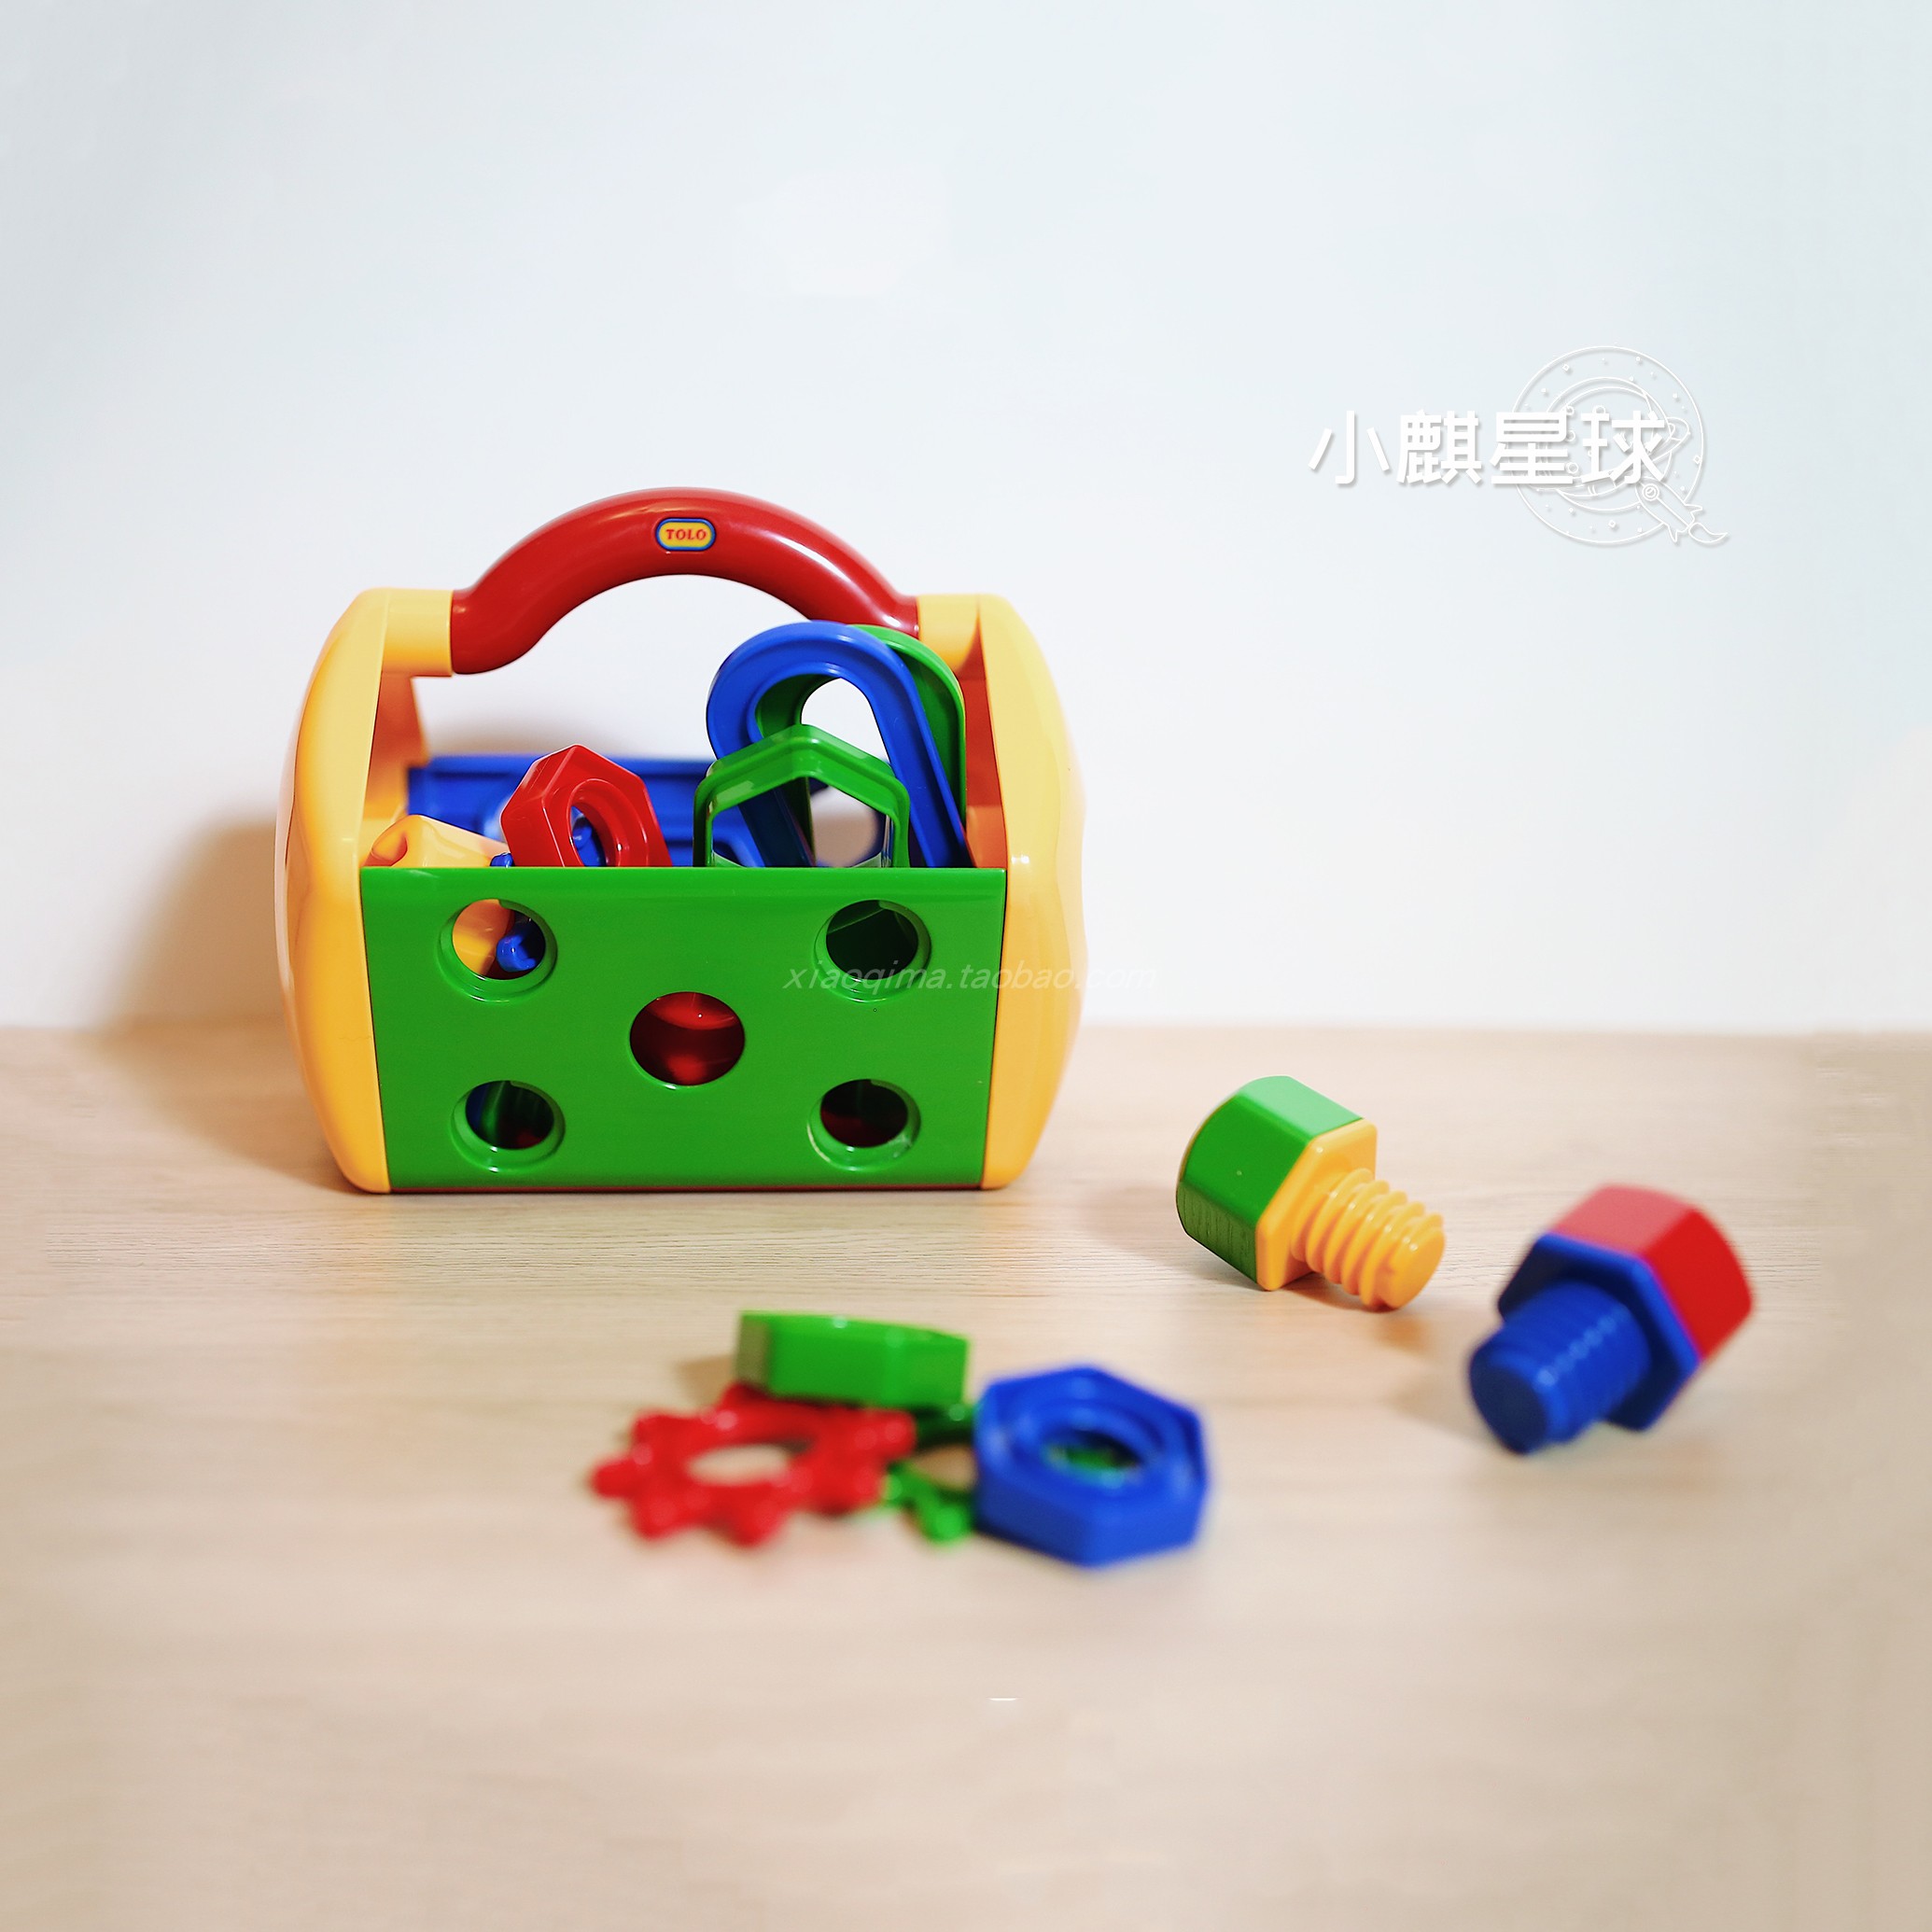 宝宝的工具箱~英国tolo经典工具箱拧螺丝螺母组装玩具动手能力